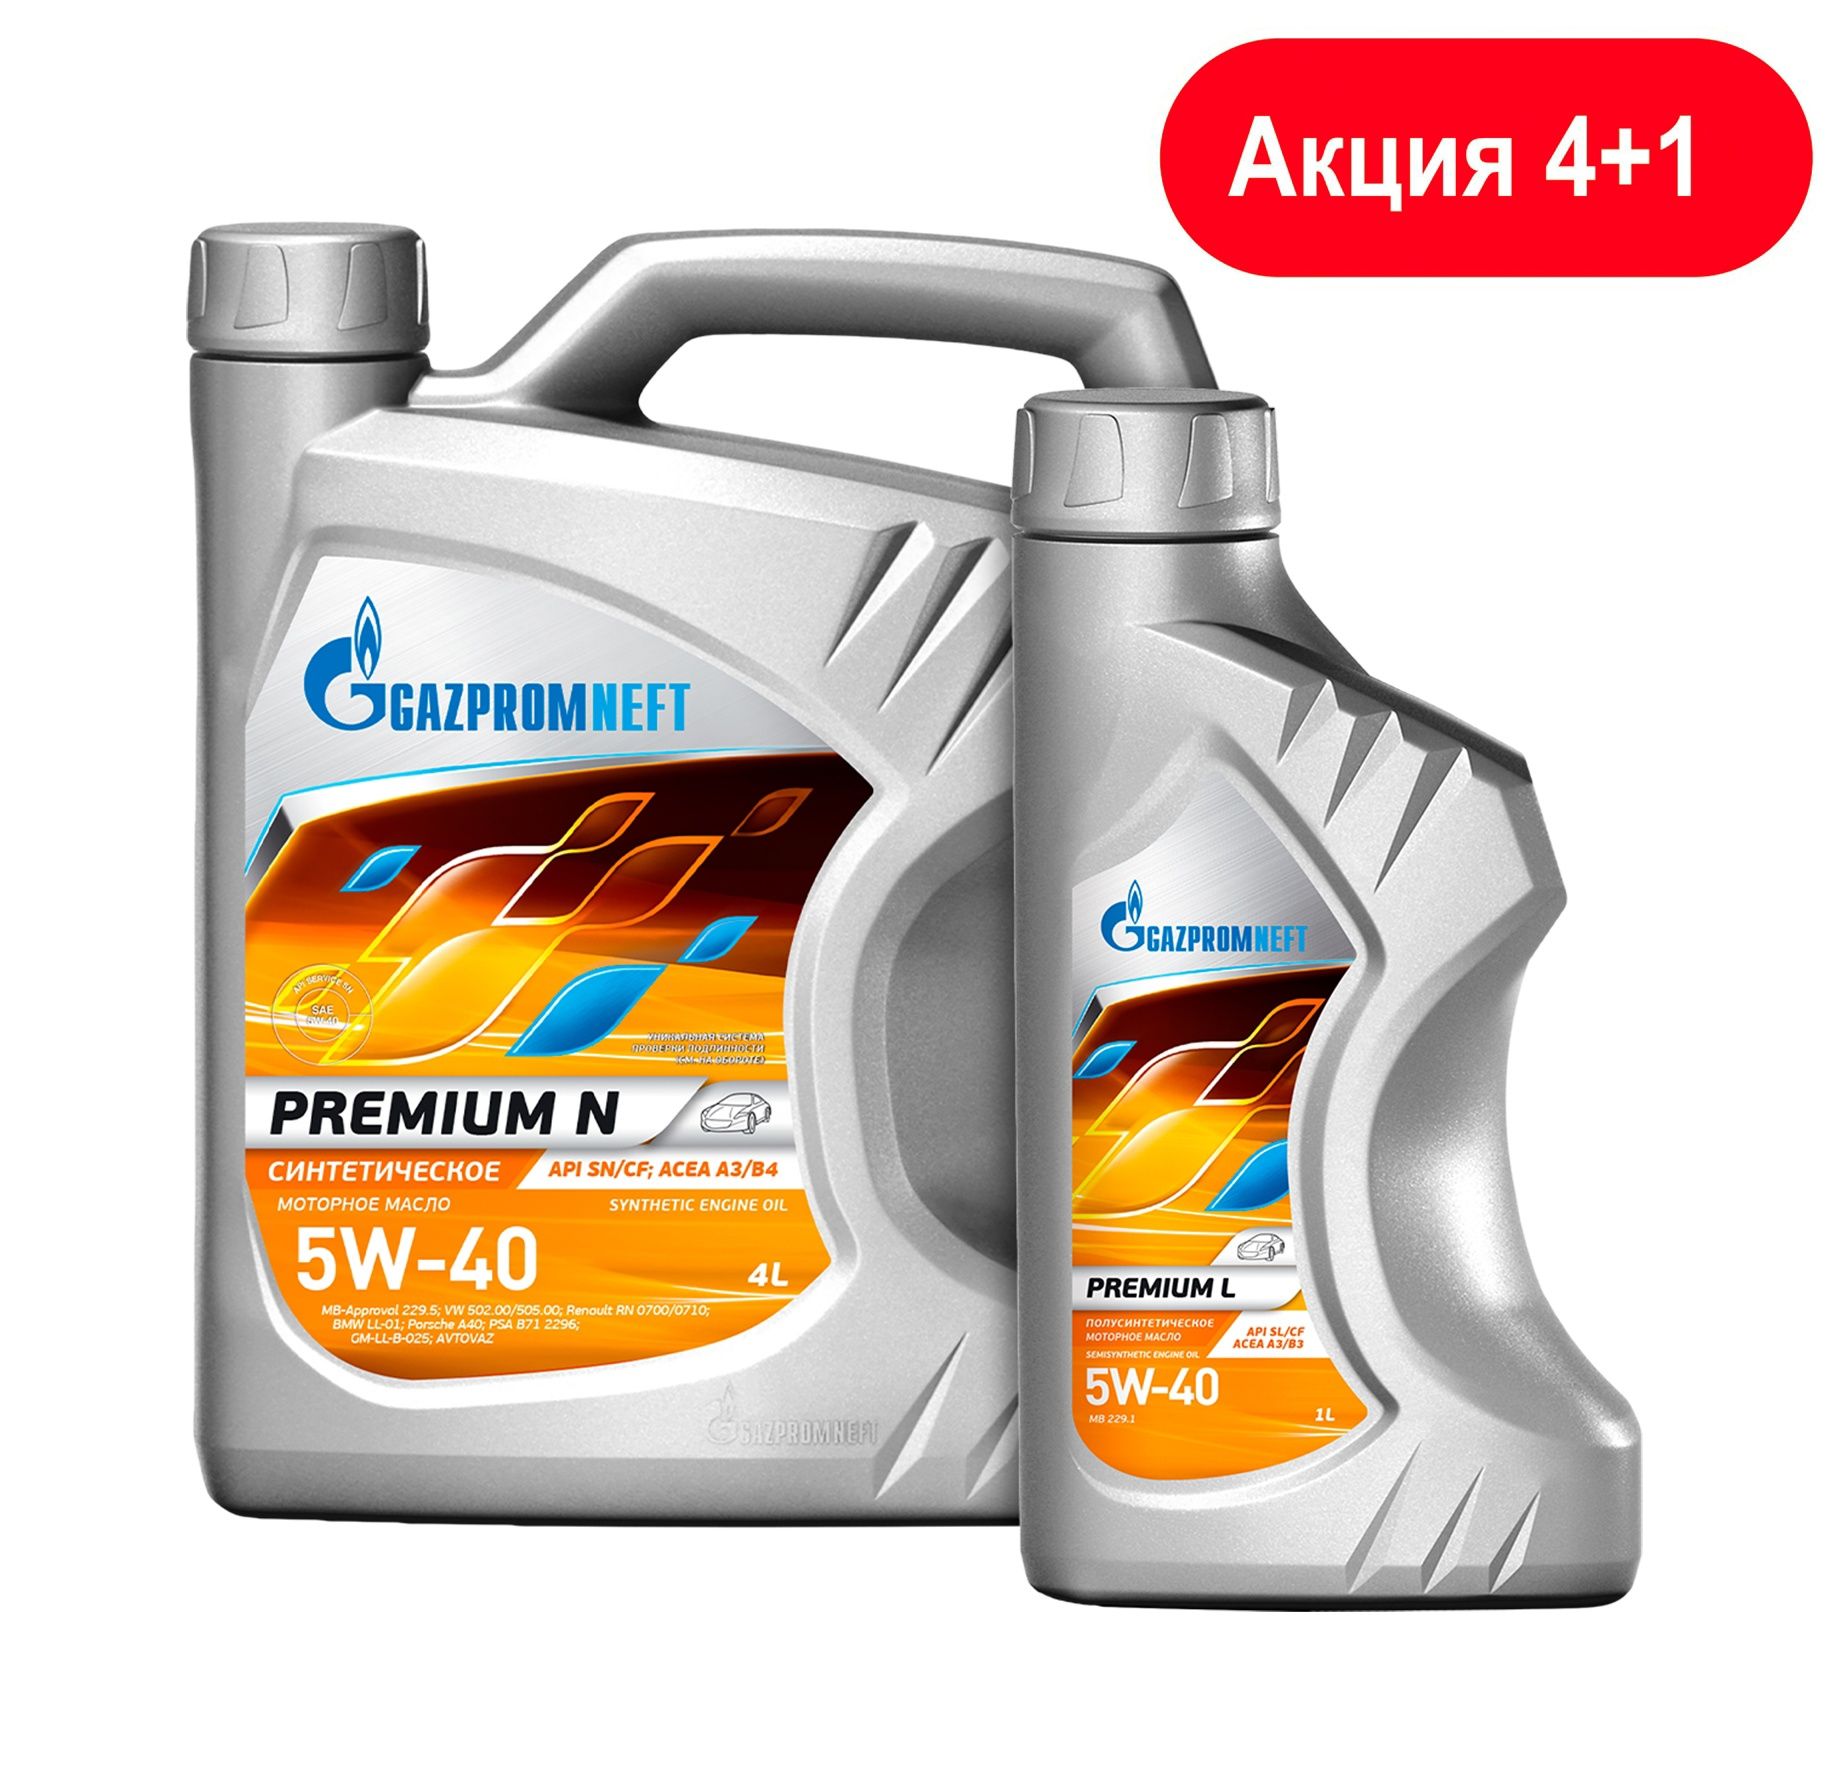 Gazpromneft Premium n 5w-40. Масло Газпромнефть 5w40 премиум. Масло Газпромнефть премиум н 5w40. Масло Газпромнефть 5w40 Premium n. Цена моторного масла 5w40 газпромнефть